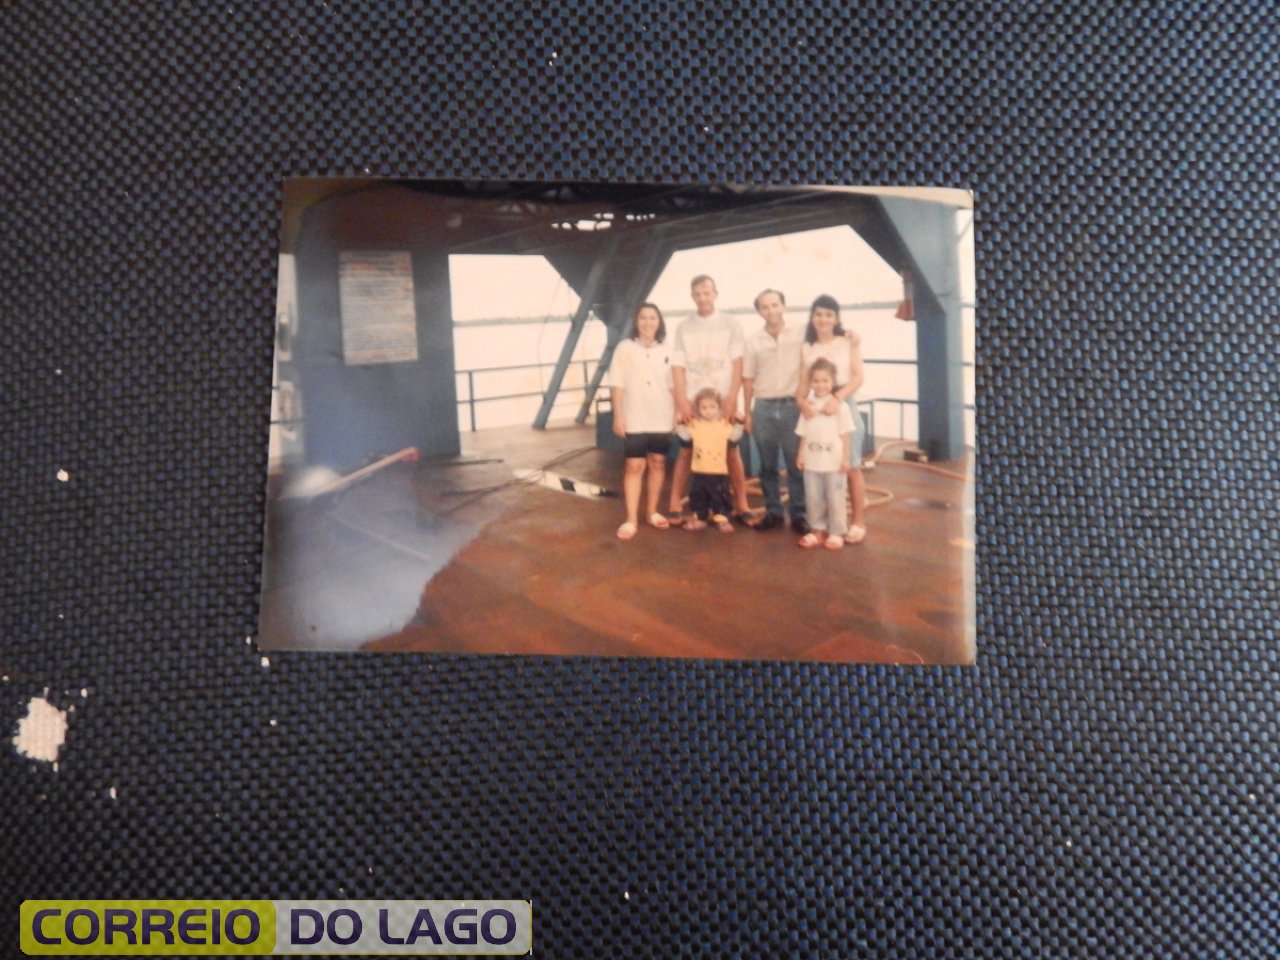 Marta Correia Jacoboski, Artur Jacoboski e Tamara Jacolboski, João Rosa Correia, Maria Correia e a sobrinha Paula Correia. Visita à Base Náutica, SH. 1995.